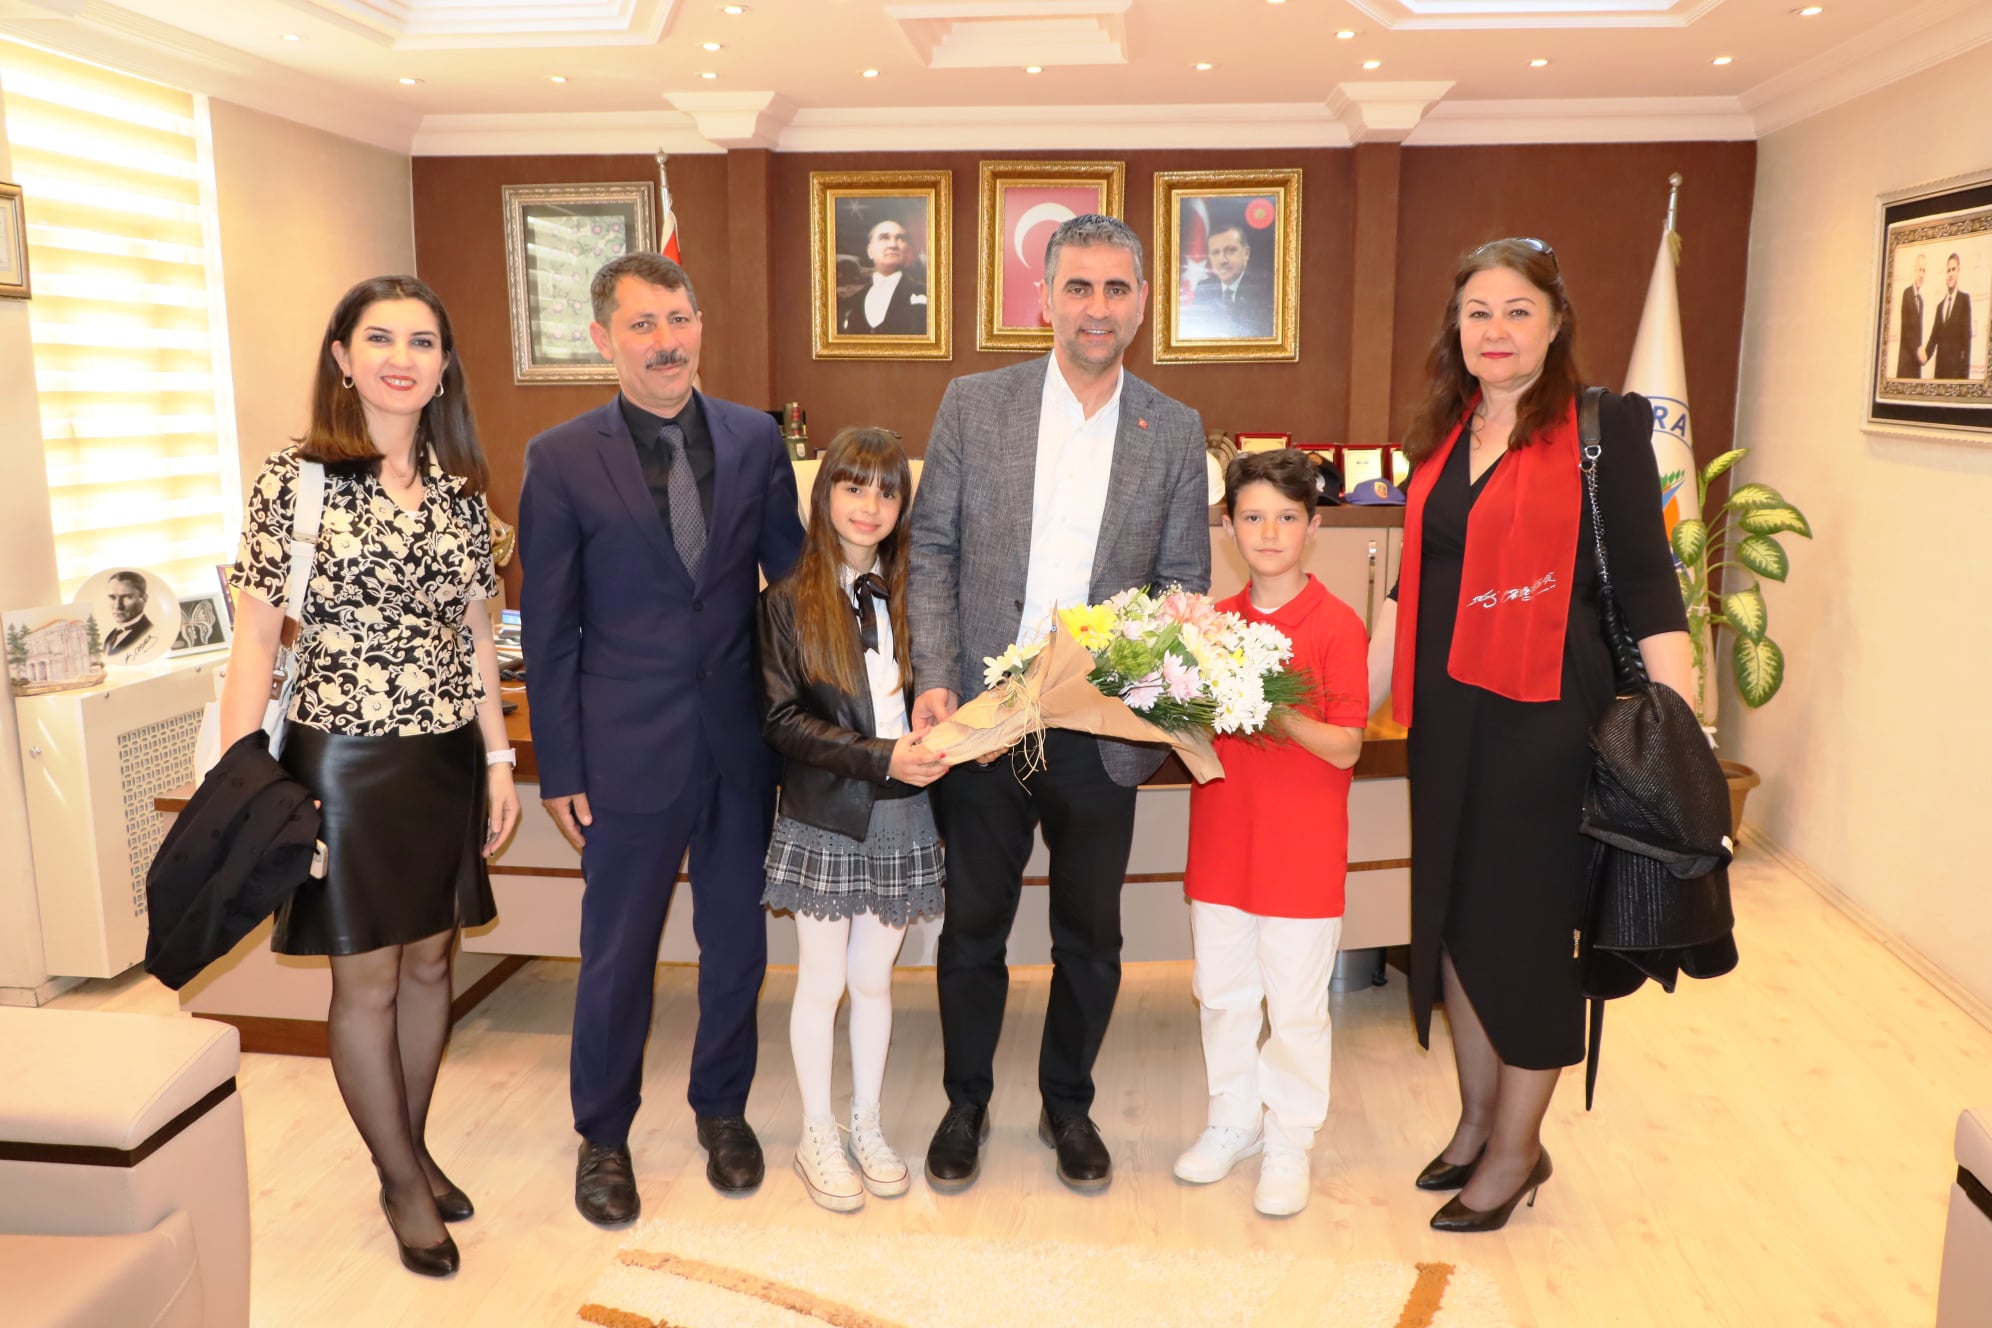 Kandıra Belediye Başkanı Adnan Turan, 23 Nisan Ulusal Egemenlik ve Çocuk Bayramı’nda koltuğunu Kefken Oğuz Kır İlkokulu 4. sınıf öğrencileri Duru Yalçınkaya ve Mehmet Emir Akgül’e bıraktı.